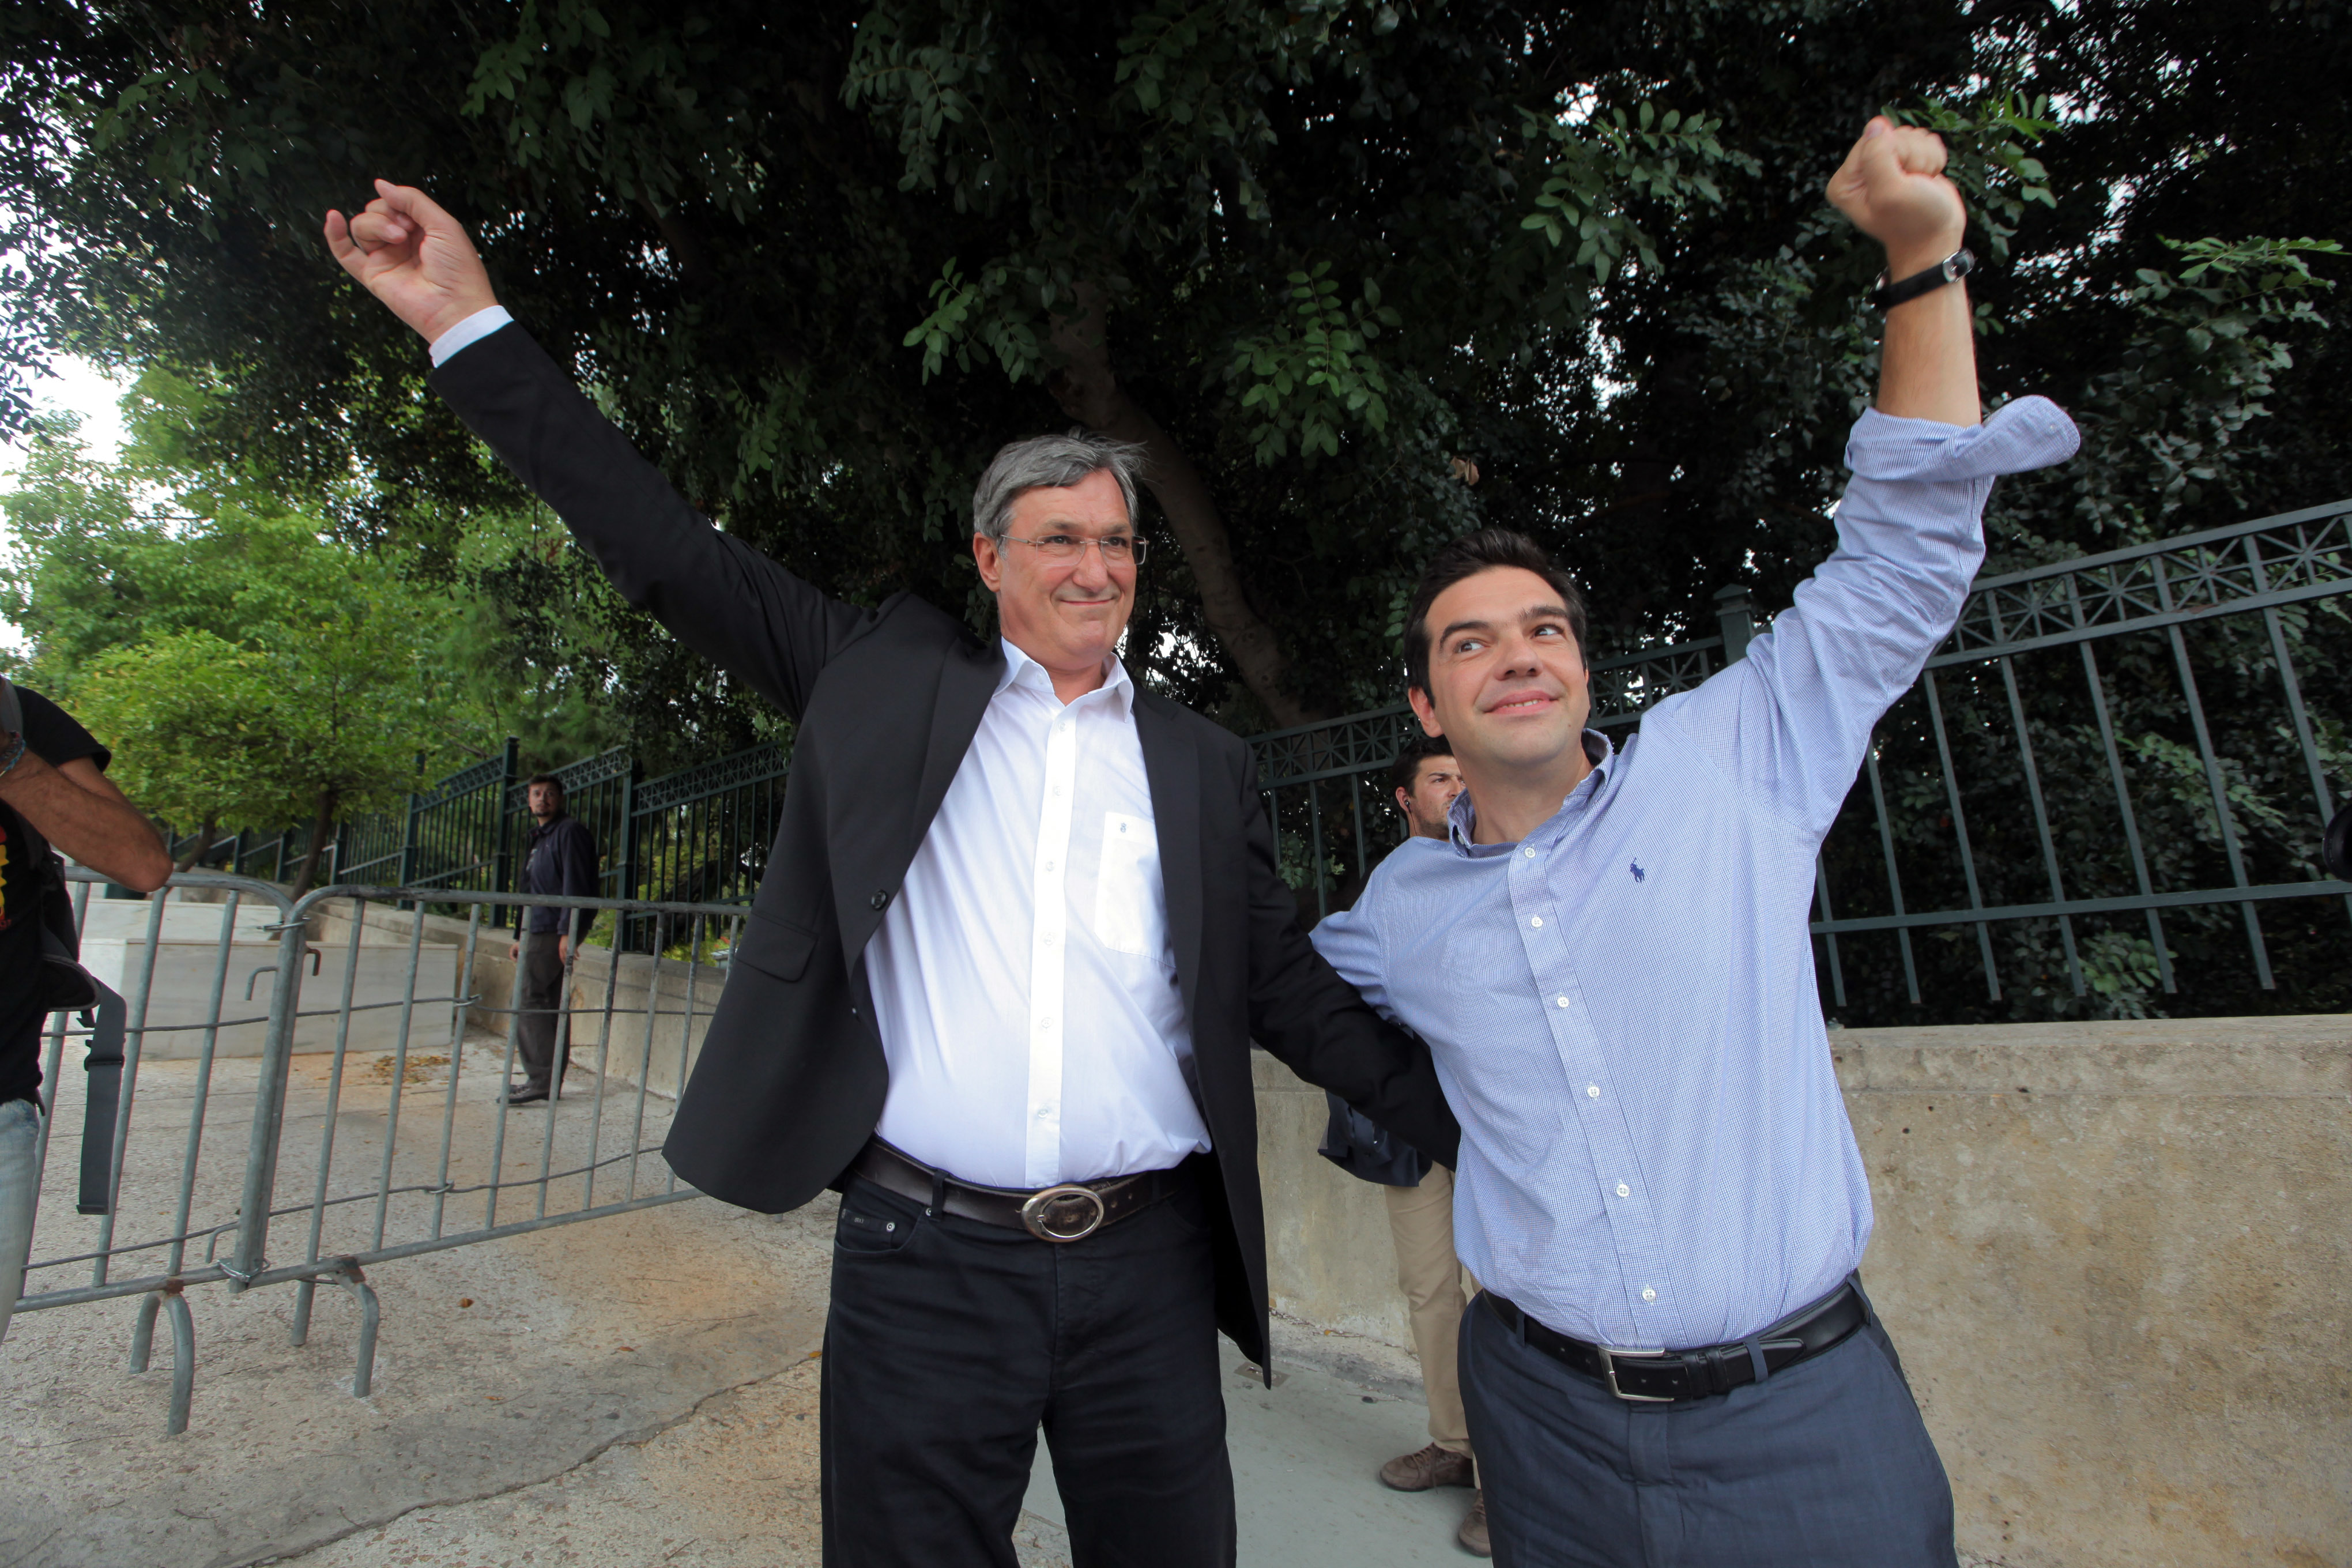 Ο Αλέξης Τσίπρας με τον Μπερντ Ριξινγκερ στη διαδήλωση κατά την Άγκελα Μέρκελ στην Αθήνα - ΦΩΤΟΓΡΑΦΙΑ EUROKINISSI